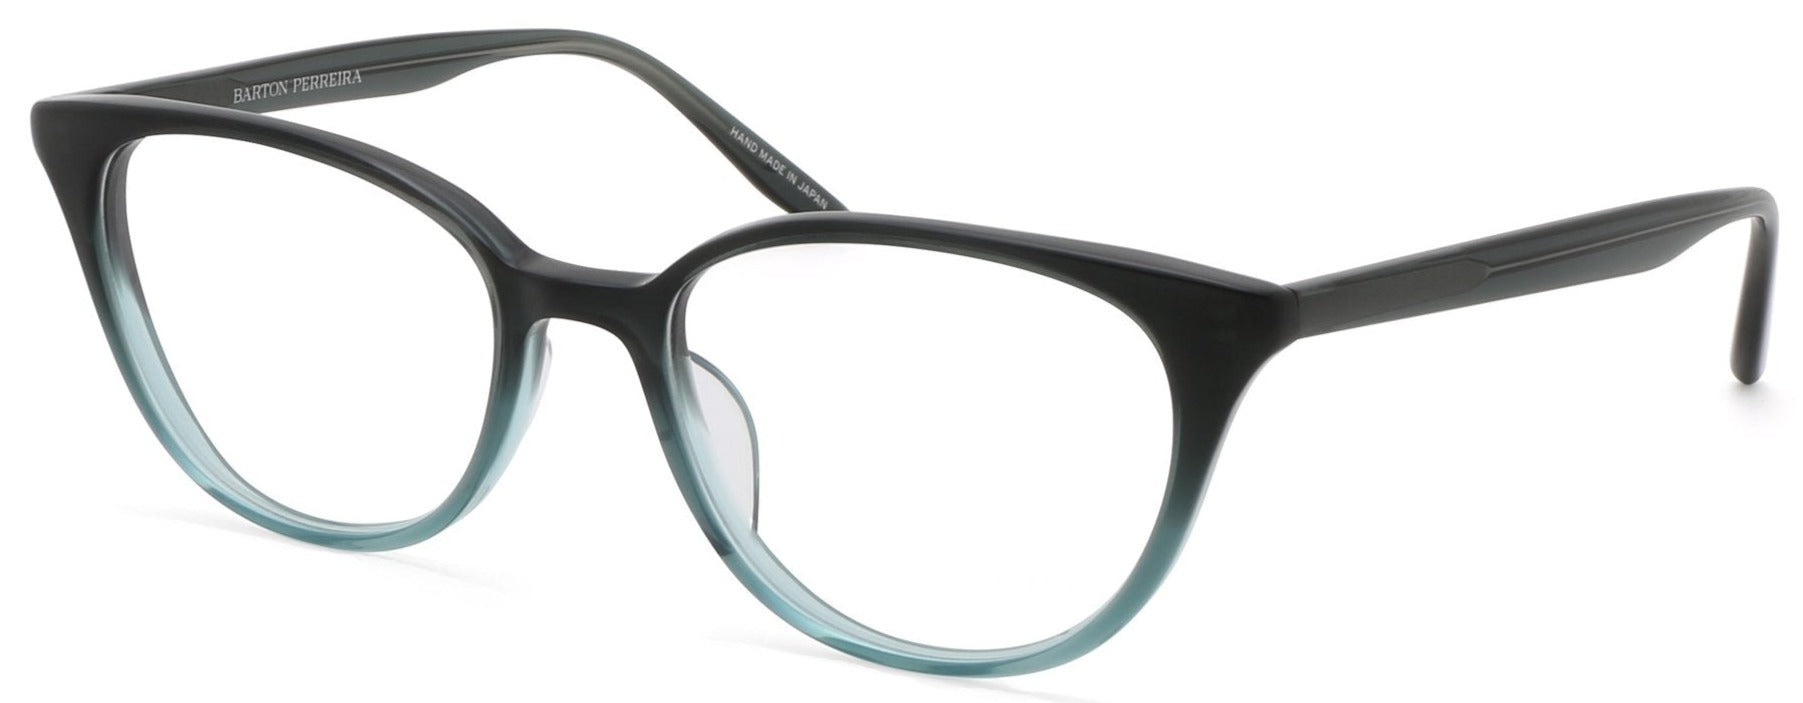 Alexander Daas - Barton Perreira Elise Eyeglasses - Teal Gradient - Side View